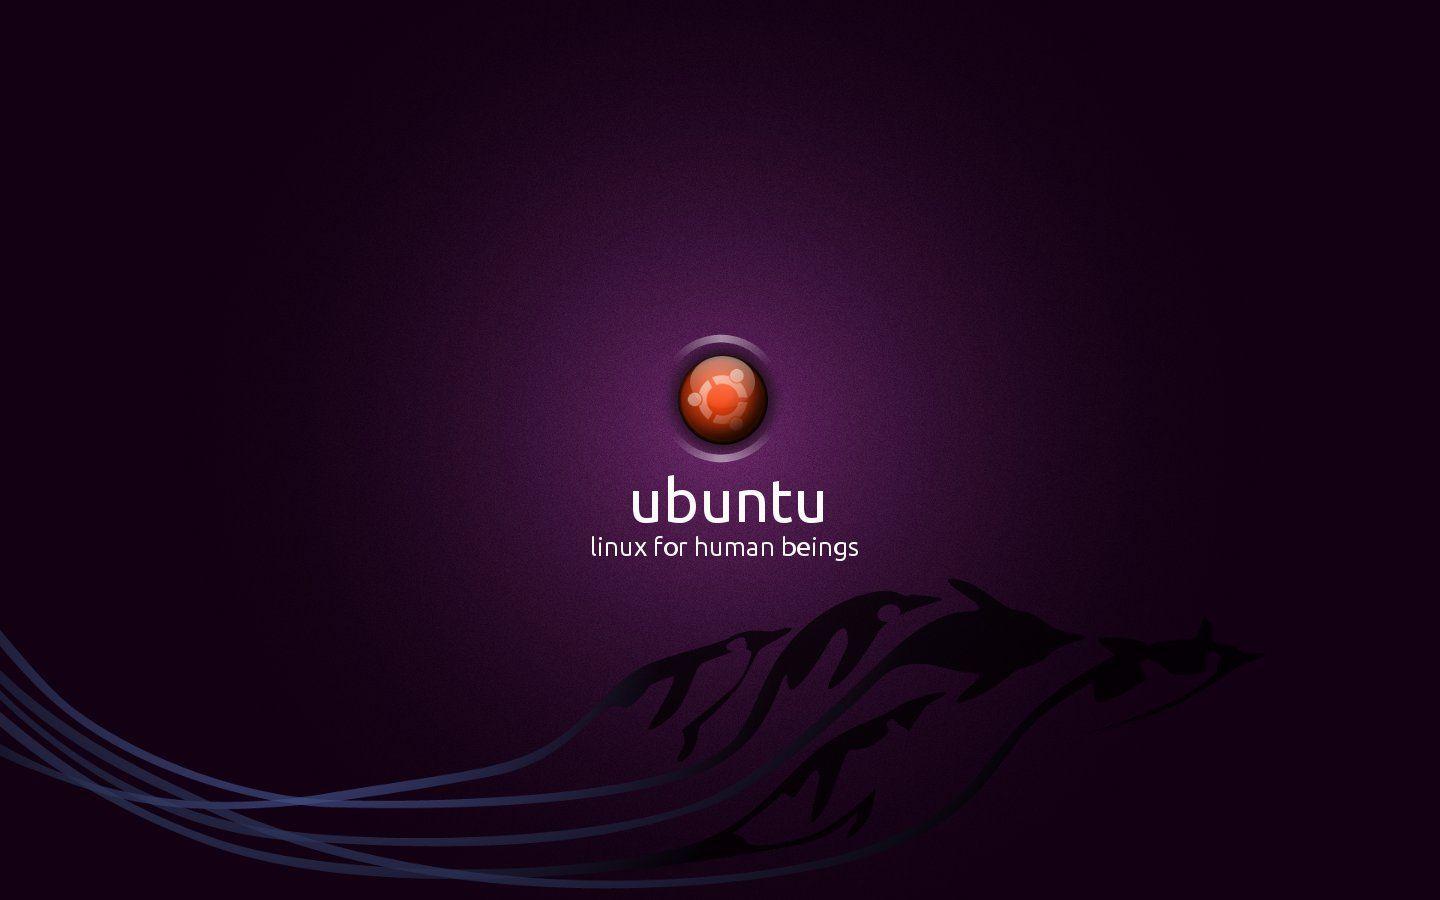 Linux Ubuntu Wallpaper 4497 Image. Areahd